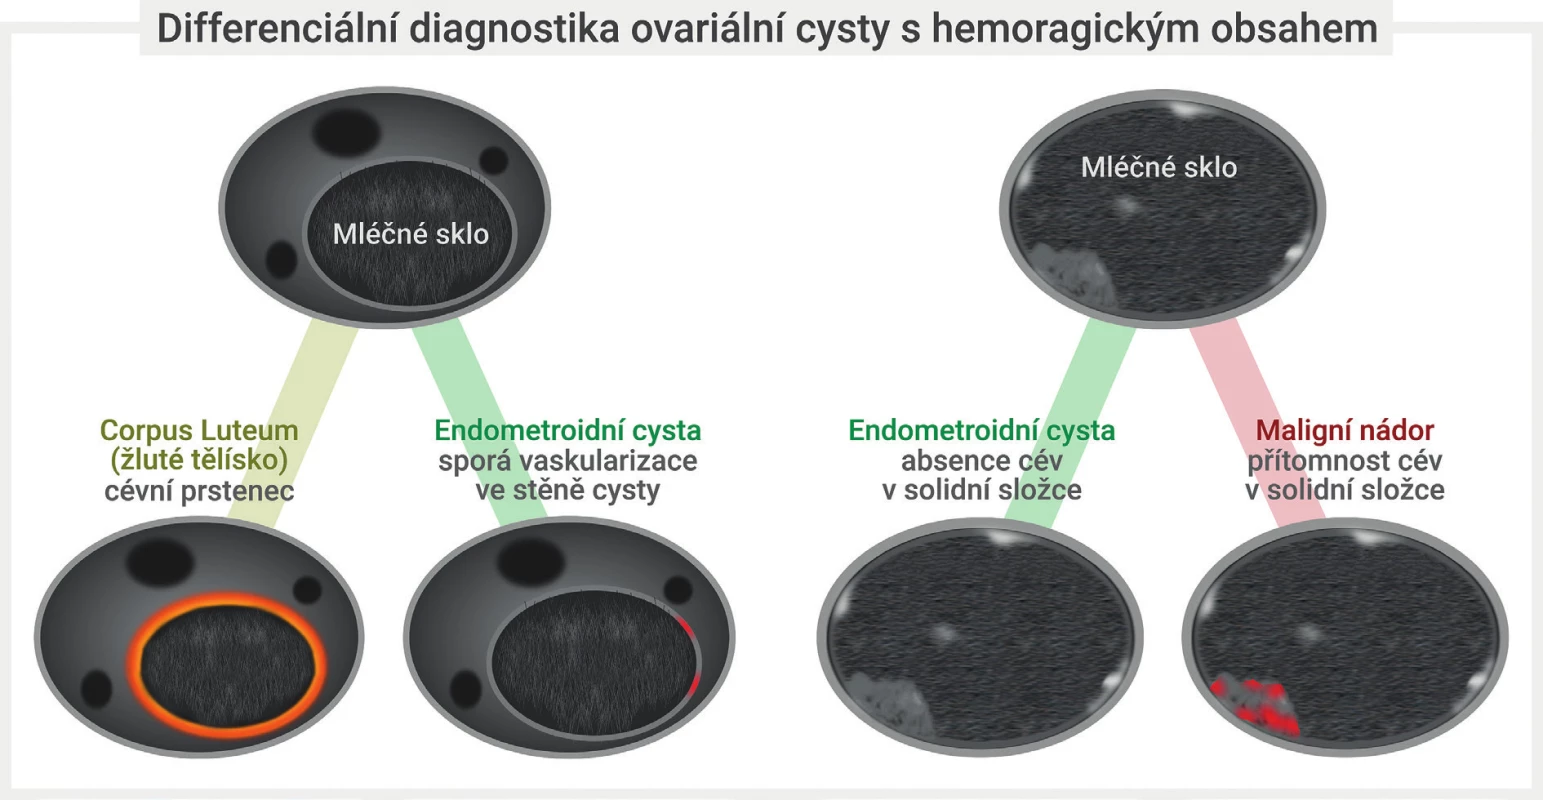 Diferenciální diagnostika hemoragické ovariální cysty<br>
Unilokulární cysta s intracystickou tekutinou vzhledu mléčného skla s cévním hypervaskulárním lemem v zobrazení barevným dopplerem svědčí
pro přítomnost funkční korpusluteinní hemoragické cysty, přítomnost sporé perfuze v pouzdru perzistující unilokulární cysty s tekutinou vzhledu
mléčného skla svědčí nejspíše pro endometroidní cystu. Detekce přítomnosti cév uvnitř intracystické hyperechogenní papilární prominence je
vhodná k odlišení krevního (avaskulárního) koagula od nádorové (vaskularizované) papilární prominence, která je charakteristickým nálezem
ovariálních borderline nádorů. Obrázek modifikován z Guerriero et al [7].